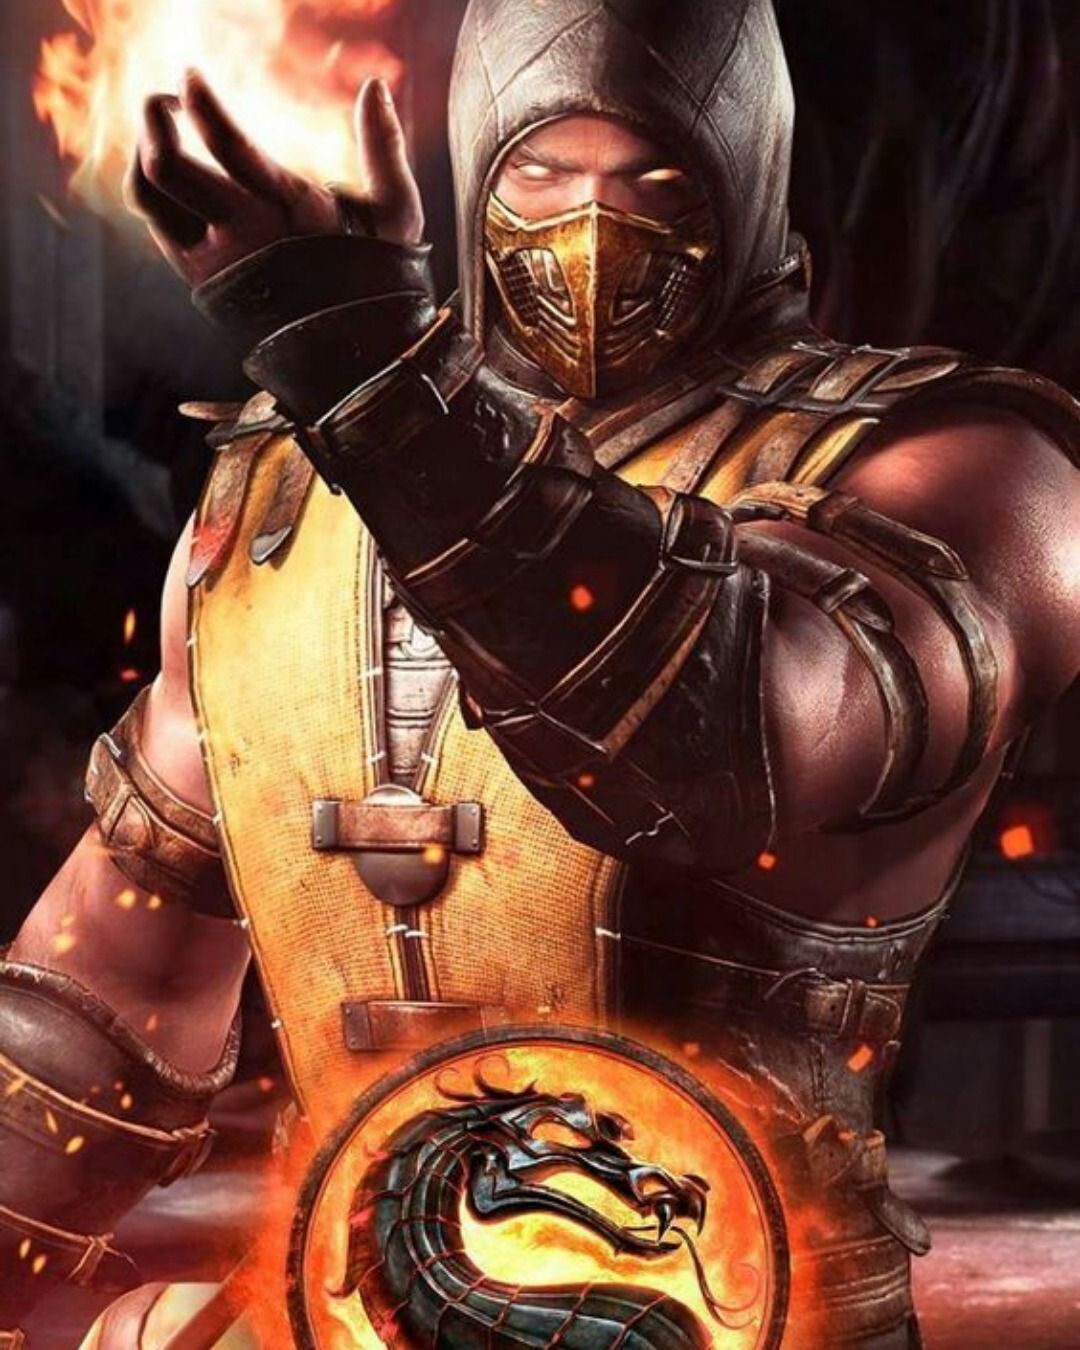 Mortal Kombat 11. Scorpion mortal kombat, Mortal kombat x wallpaper, Mortal kombat x scorpion